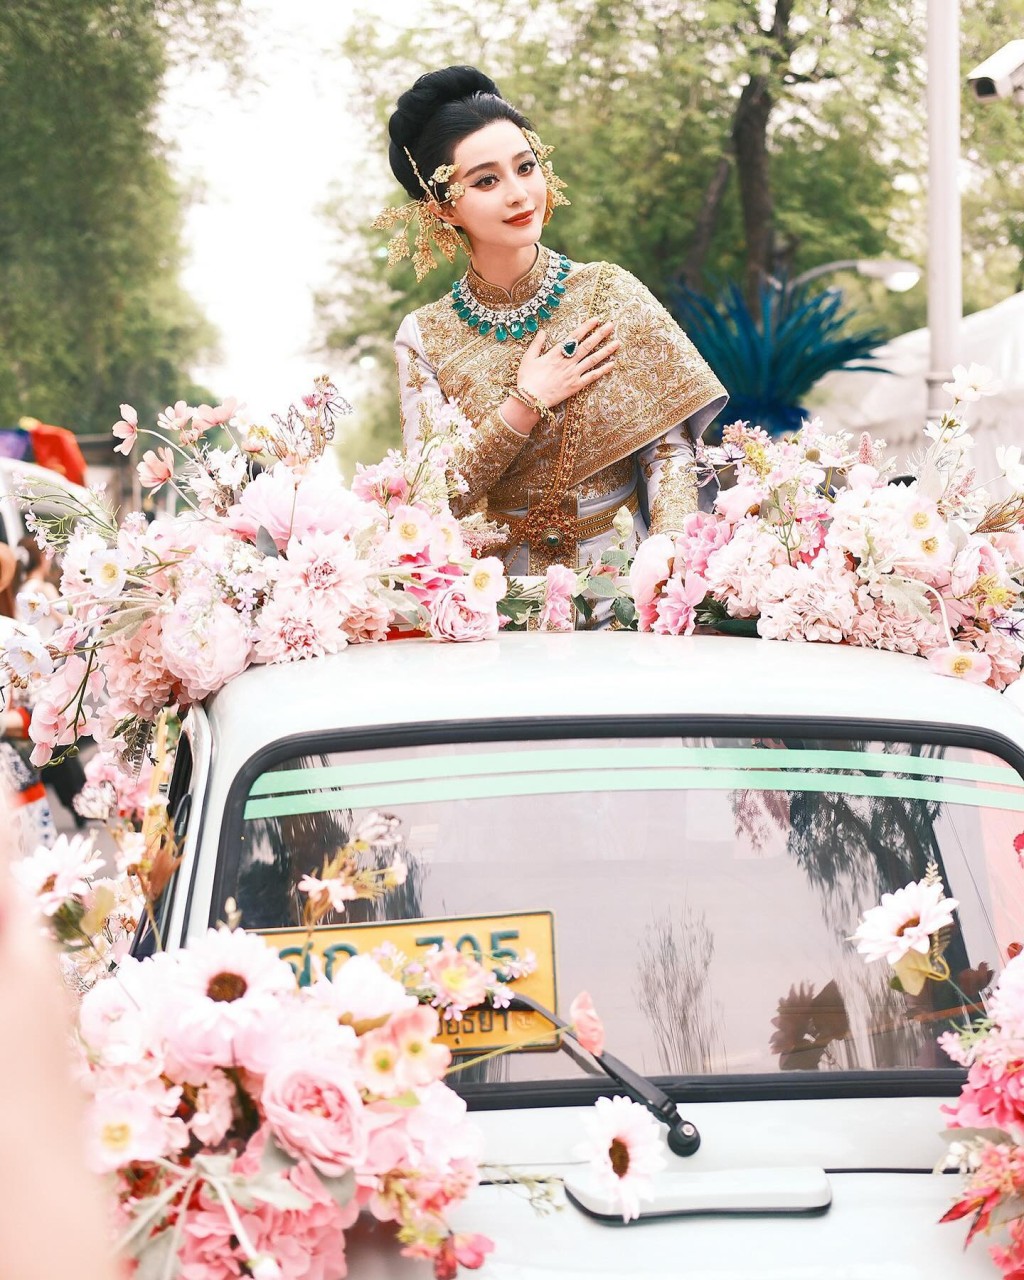 照片中可見，范冰冰穿上泰國傳統服飾，站在車上出巡，擺出不少Pose，泰味十足。